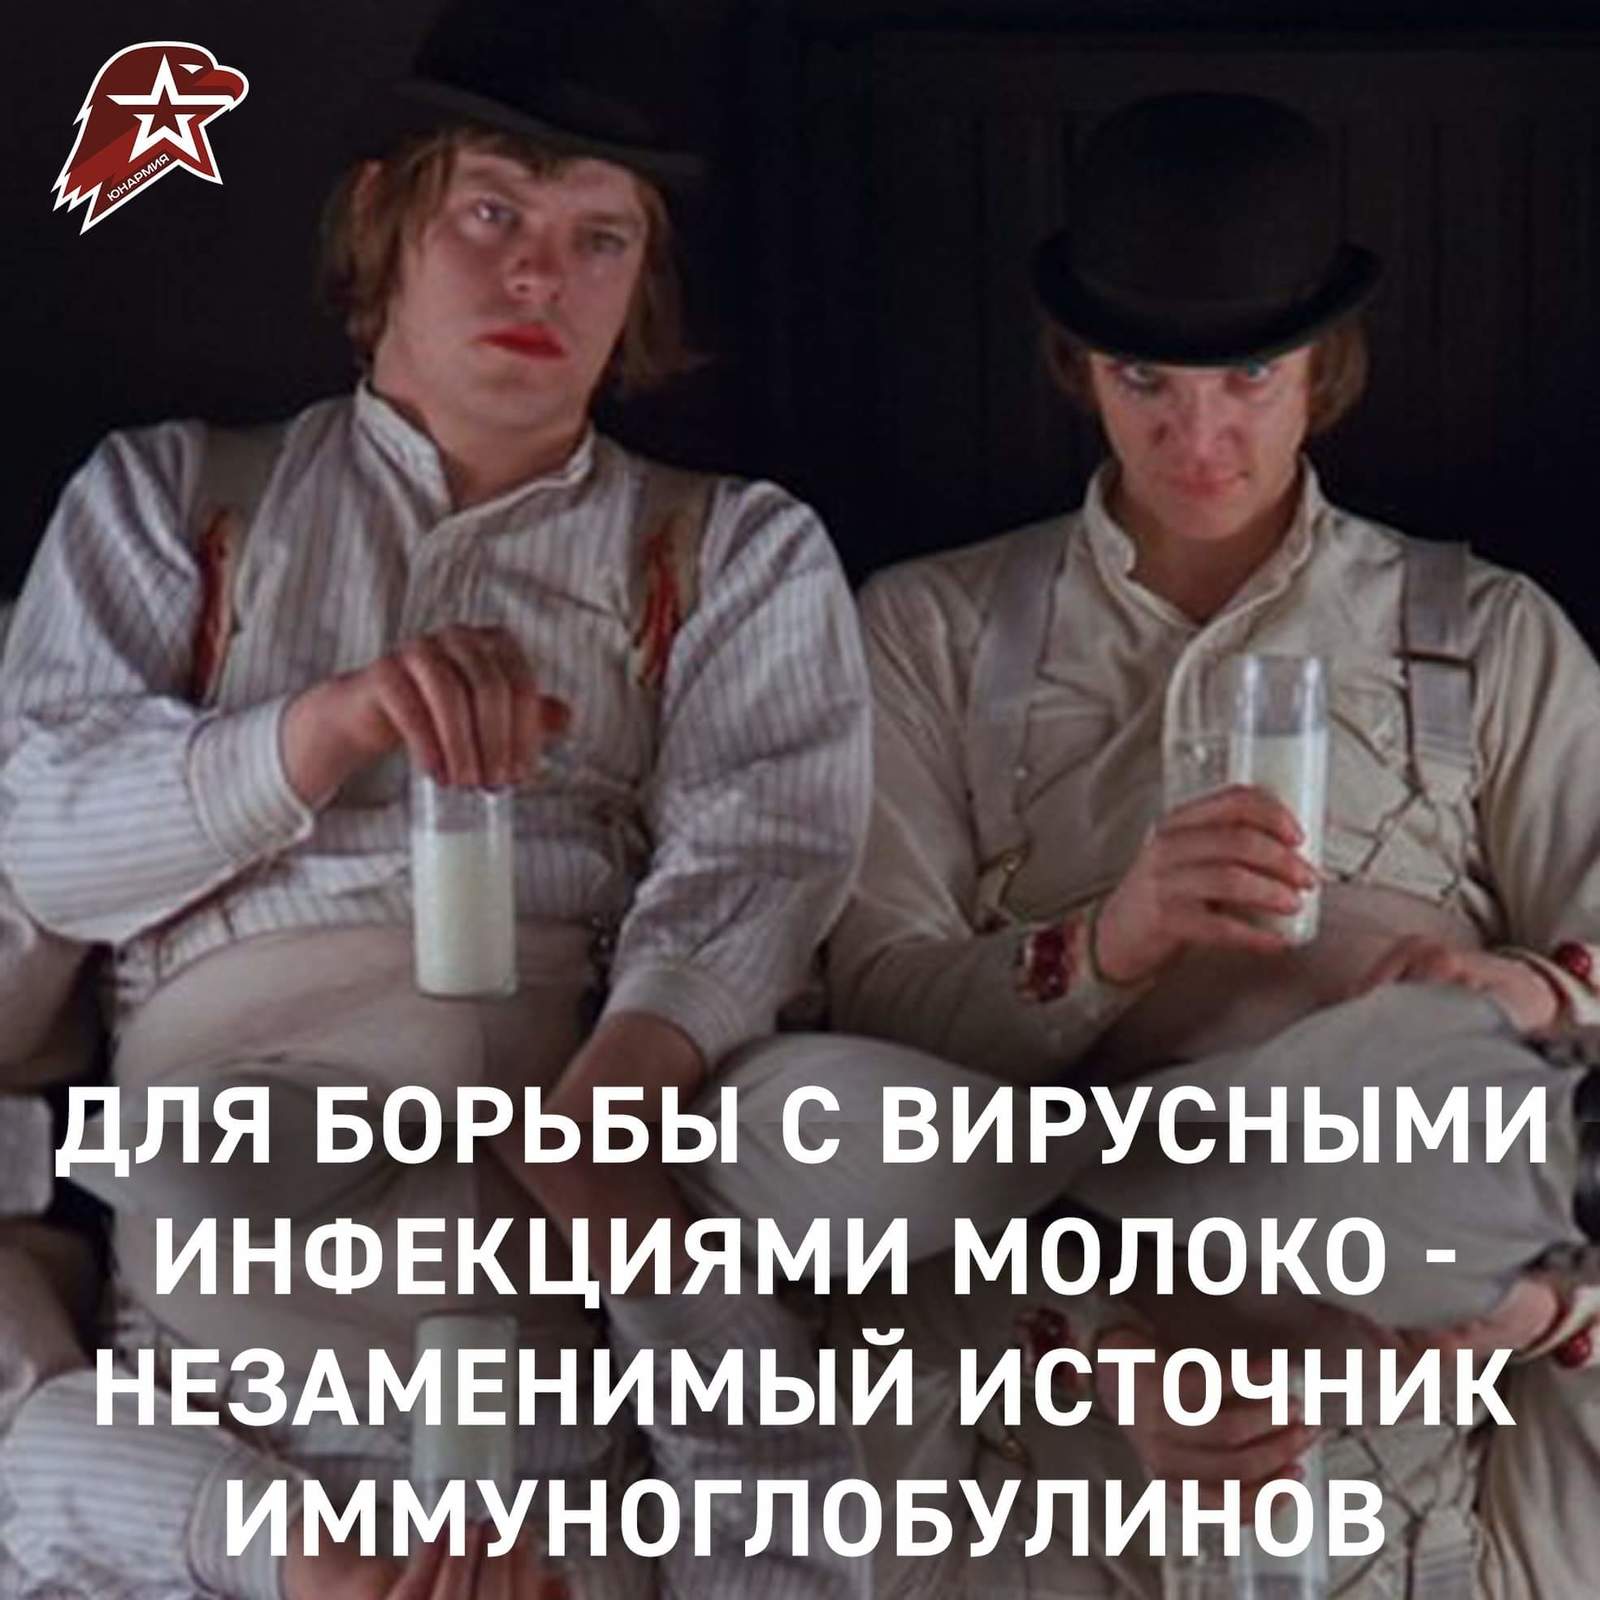 Fat troll-SMMschik in the ranks of the Yunarmiya - Stanley Kubrick, Yunarmiya, Milk, Troll, Longpost